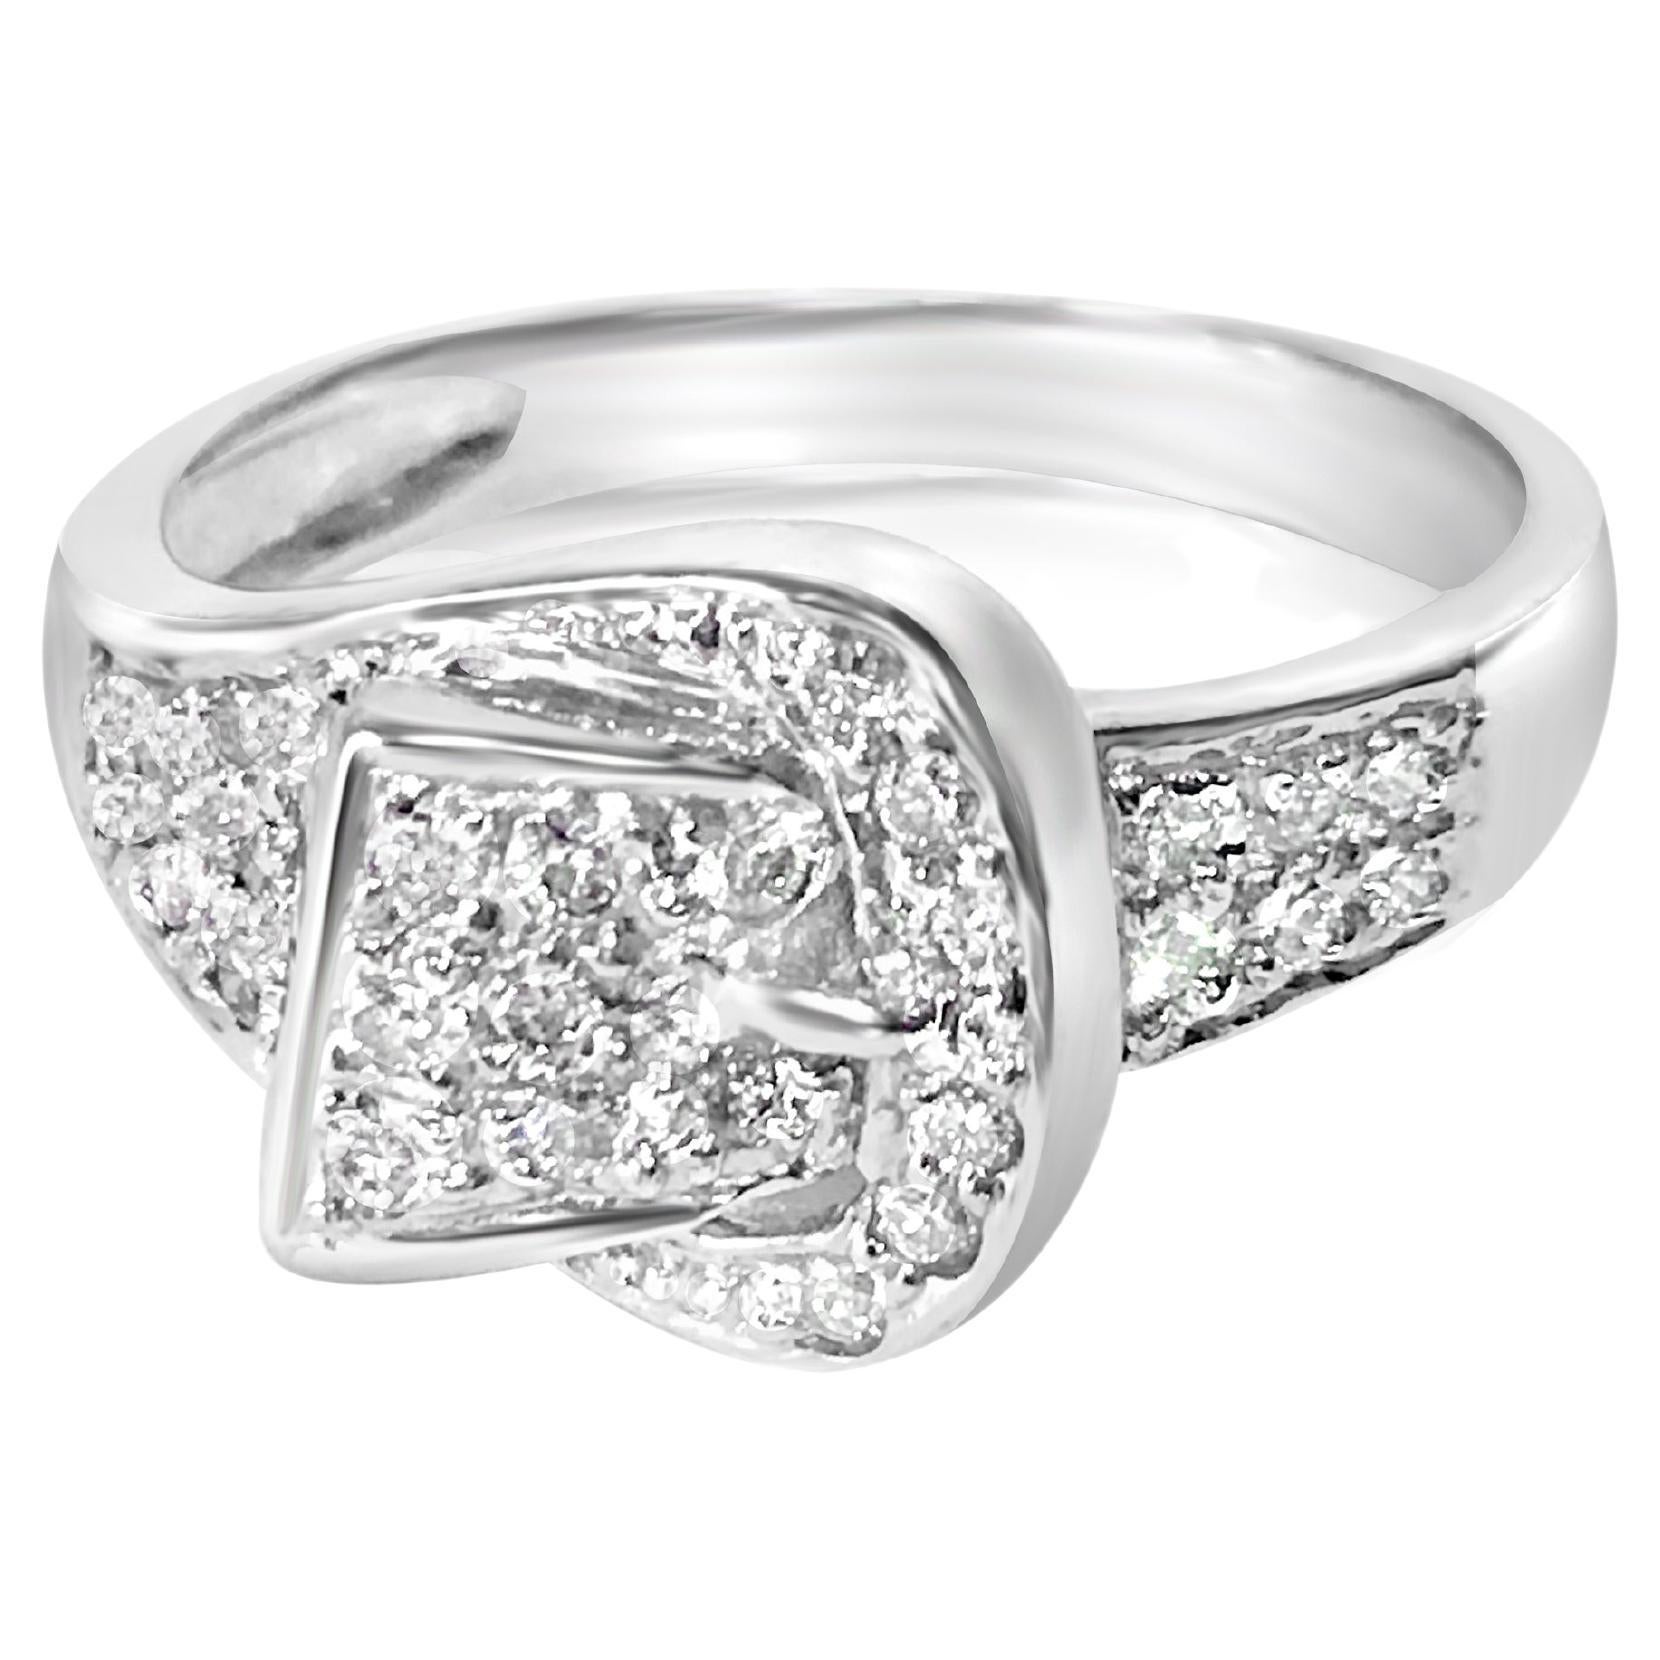 Engagement Anniversary Ring 14K White Gold Round Cut 0.25 Ct New Diamond Jewelry 